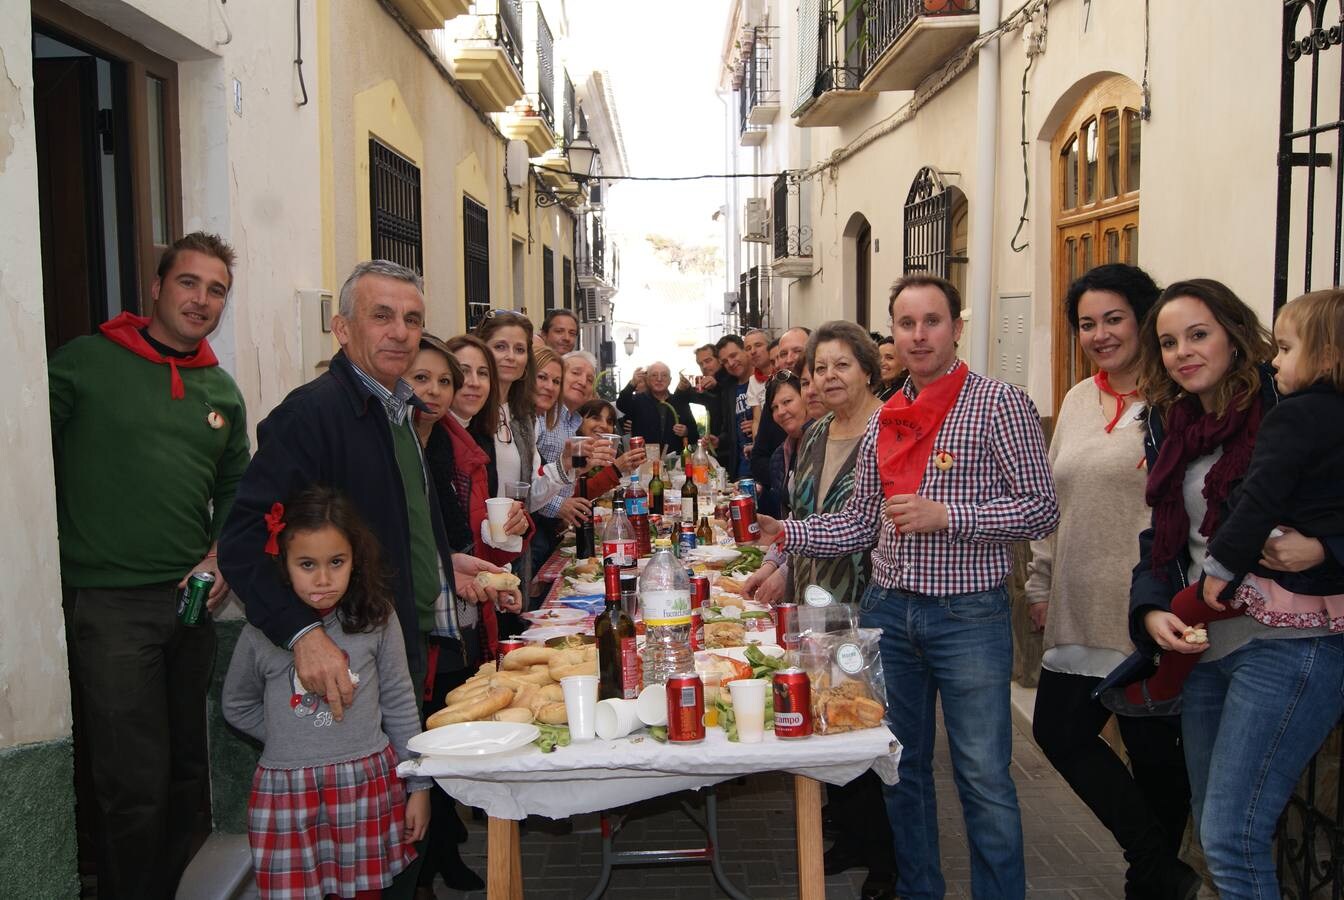 omo cada 20 de enero, miles de vecinos y visitantes abarrotaron las calles para disfrutar de una fiesta declarada de Interés Turístico de Andalucía